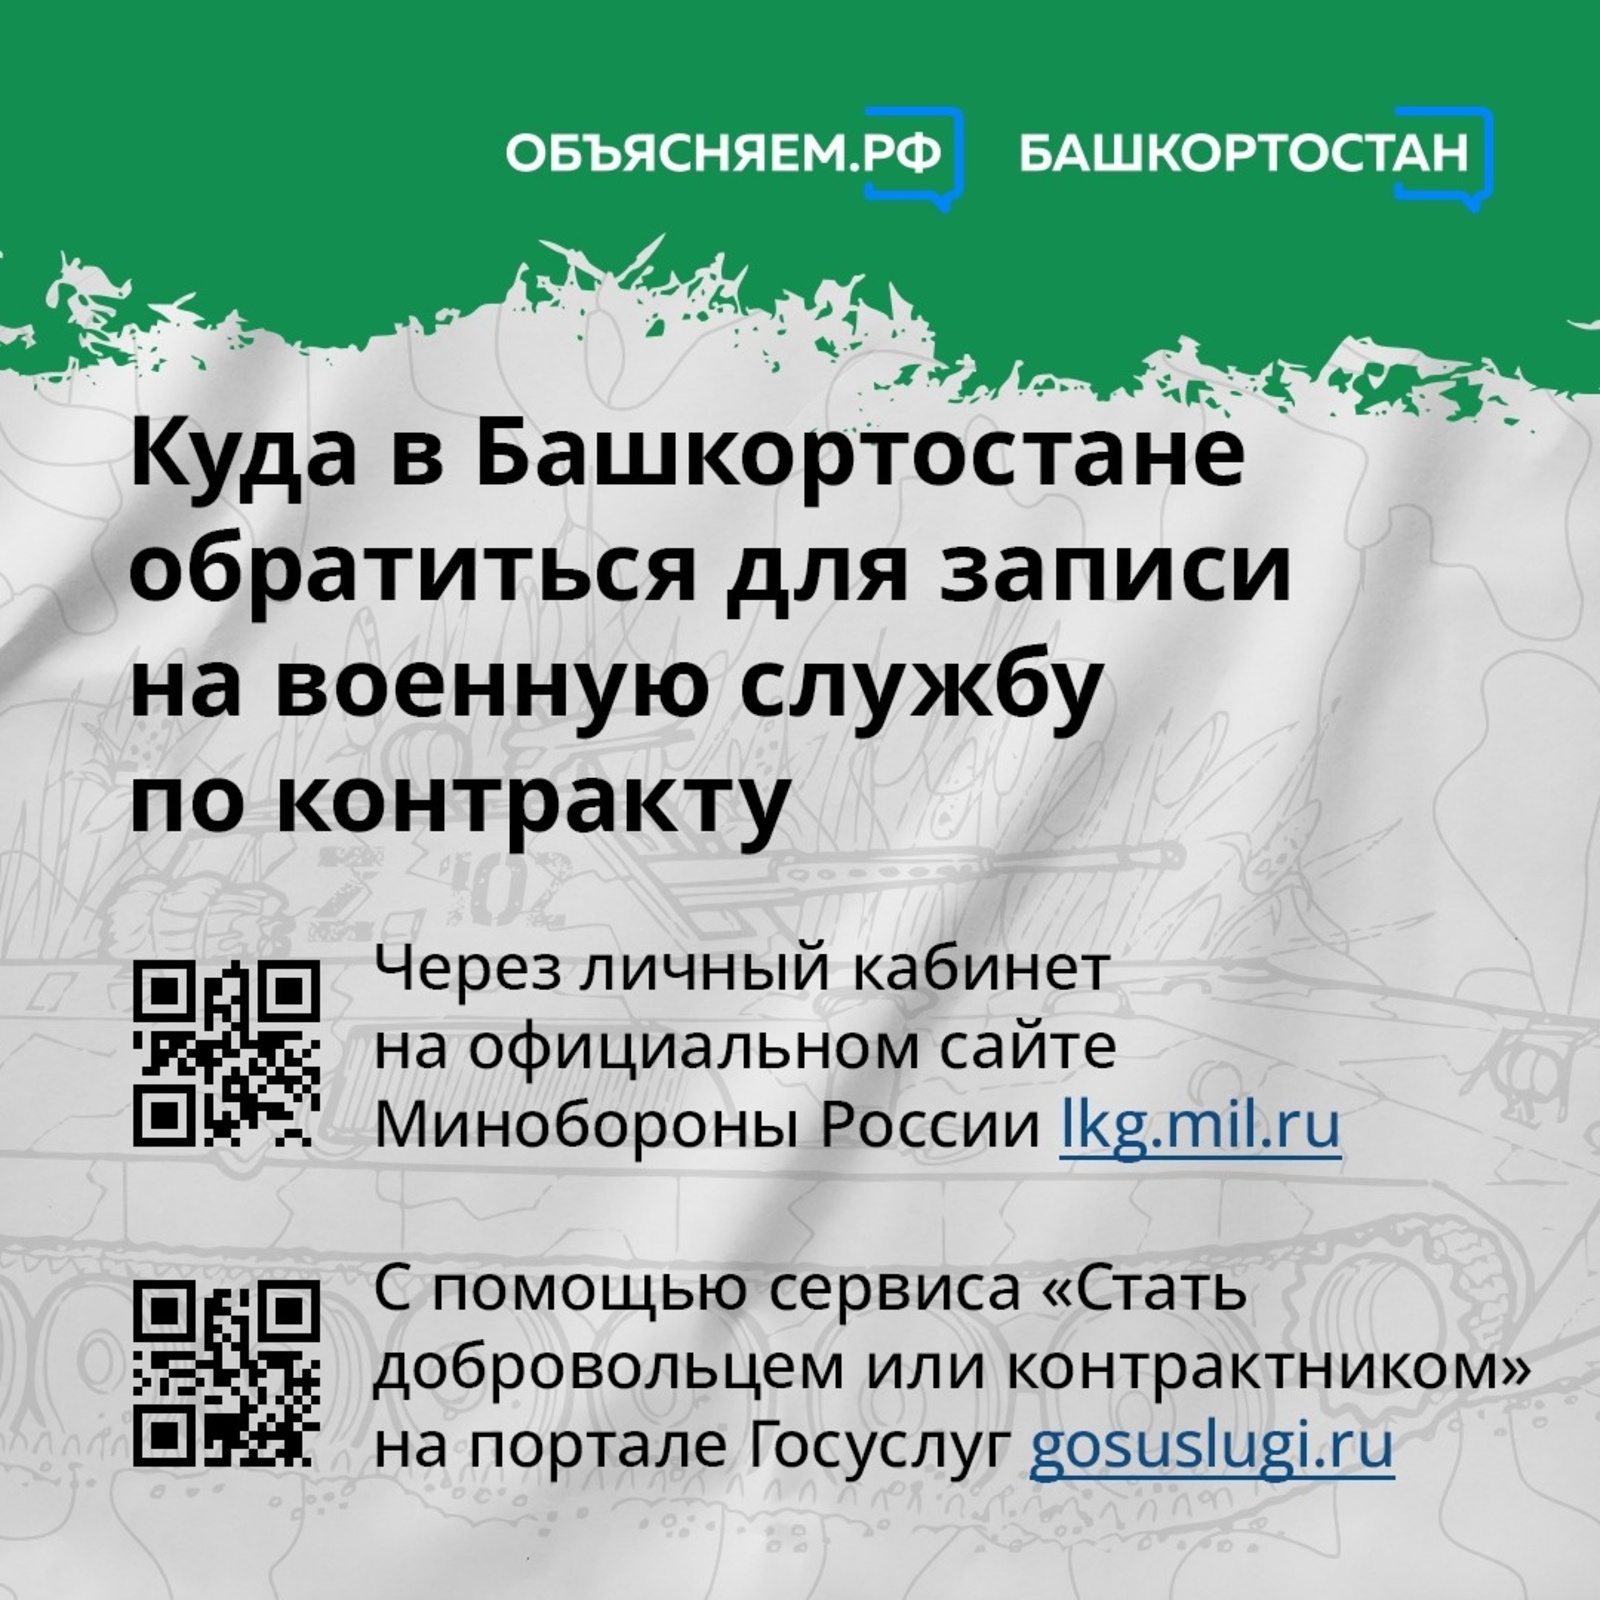 На какой срок в Башкортостане можно заключить контракт на прохождение военной службы?